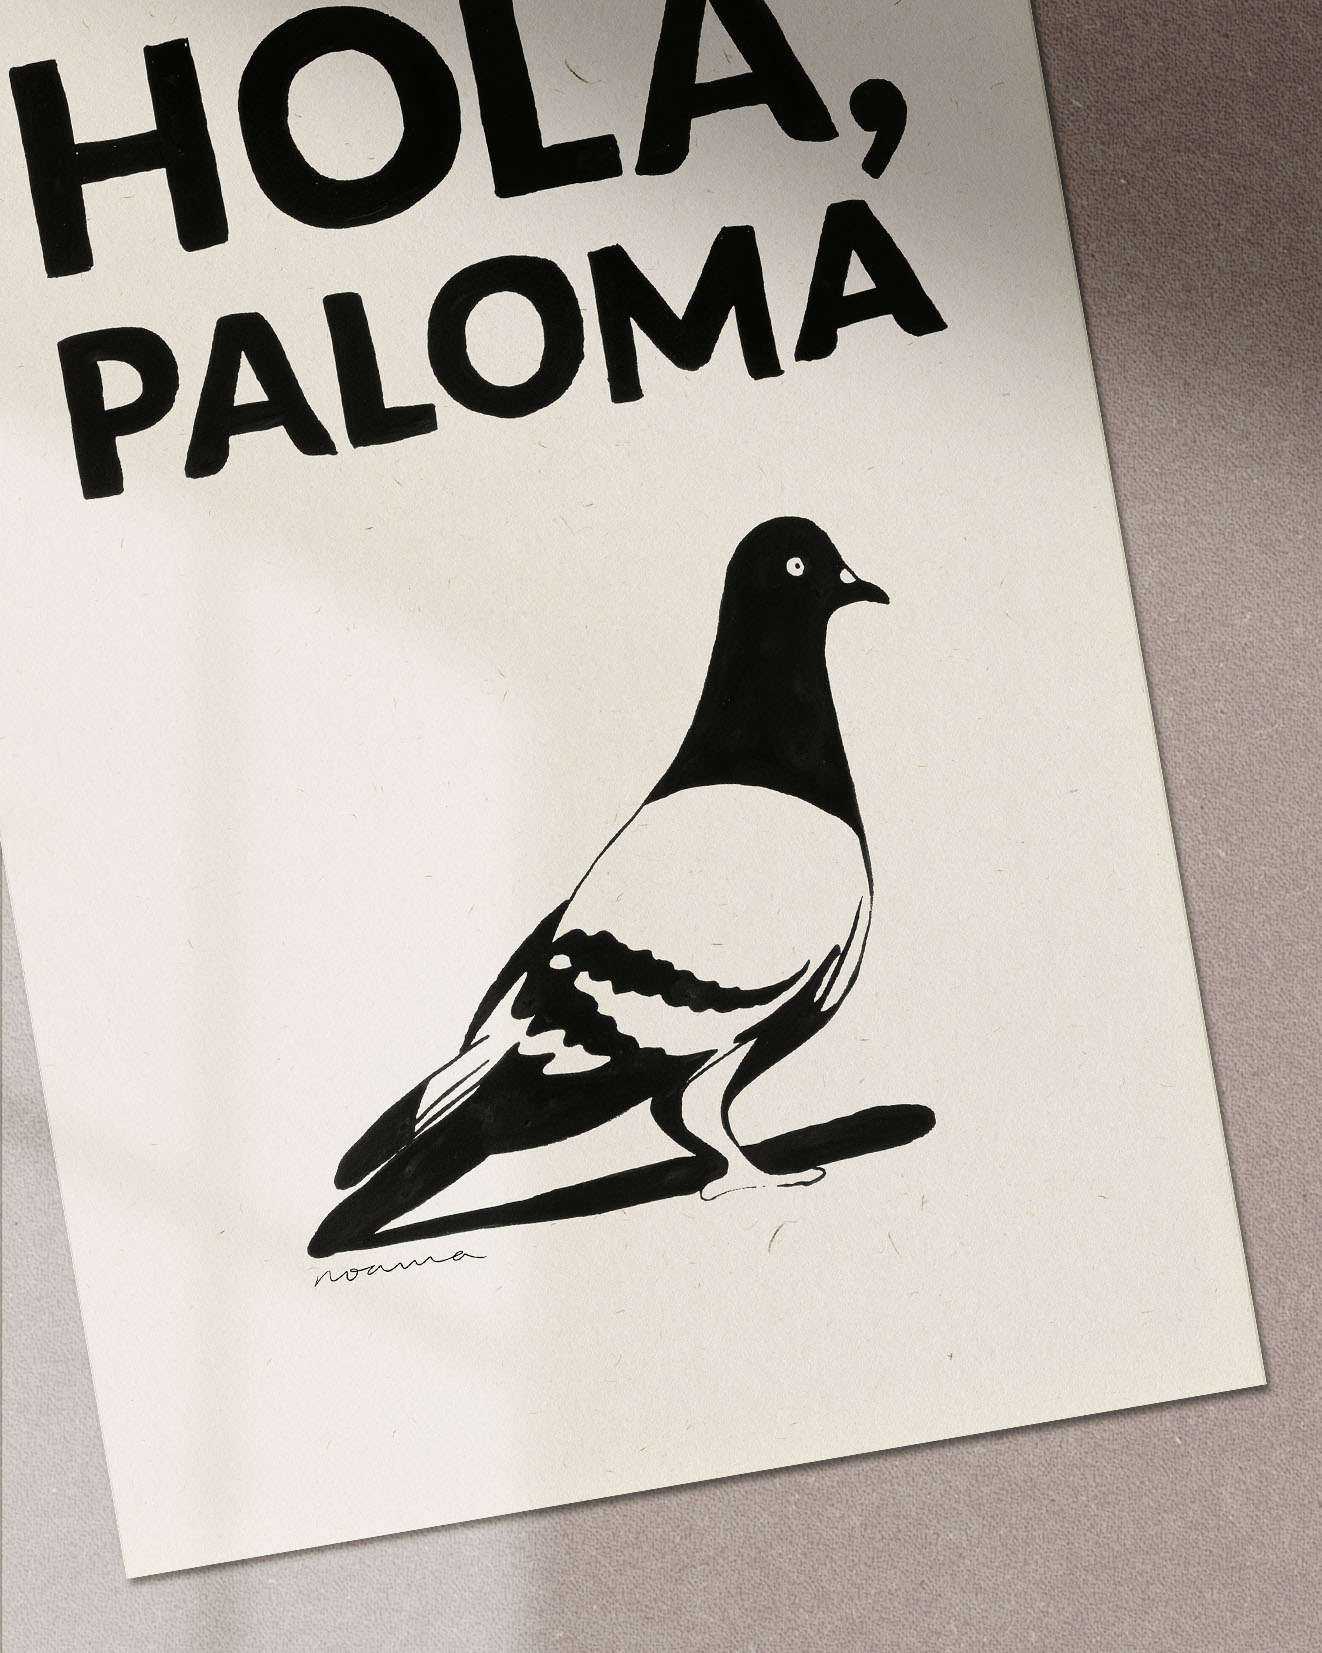 Hola, Paloma